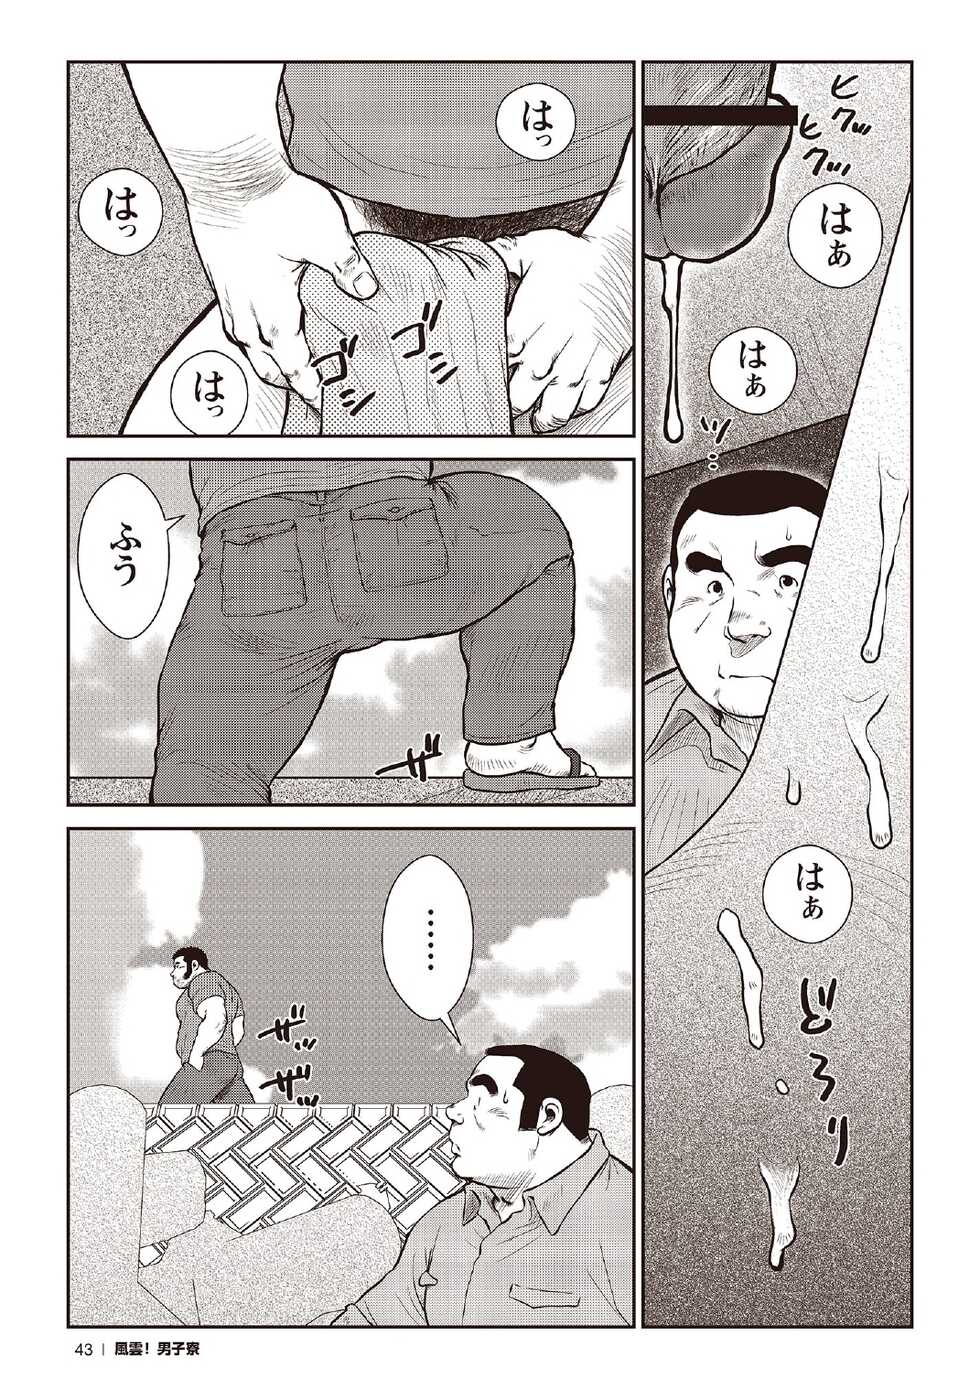 [Ebisubashi Seizou] Ebisubashi Seizou Tanpen Manga Shuu 2 Fuuun! Danshi Ryou [Bunsatsuban] PART 2 Bousou Hantou Taifuu Zensen Ch. 1 + Ch. 2 [Digital] - Page 21